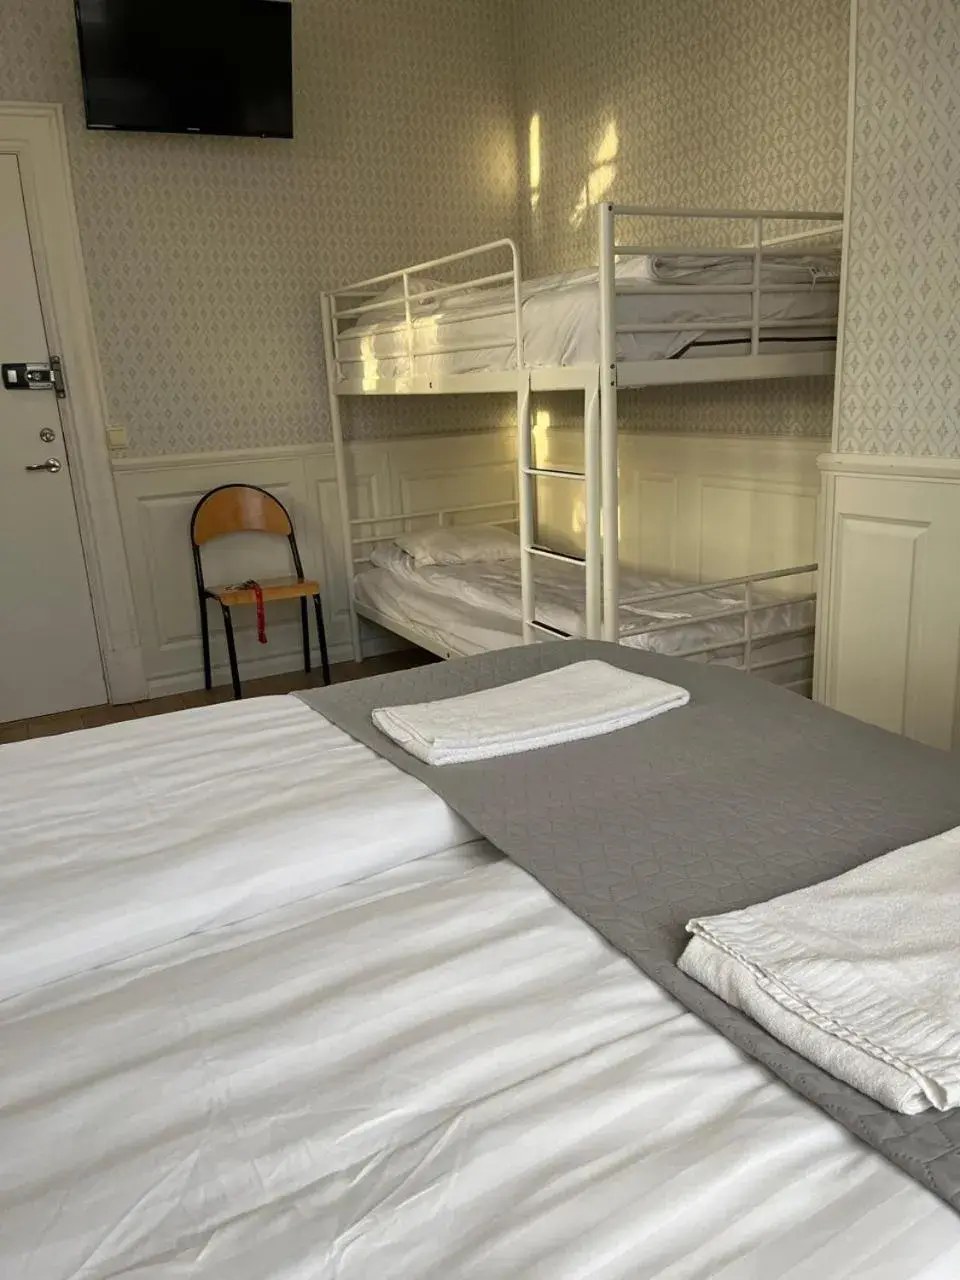 Quadruple Room with Private Bathroom in Halmstad Hotell & Vandrarhem Kaptenshamn